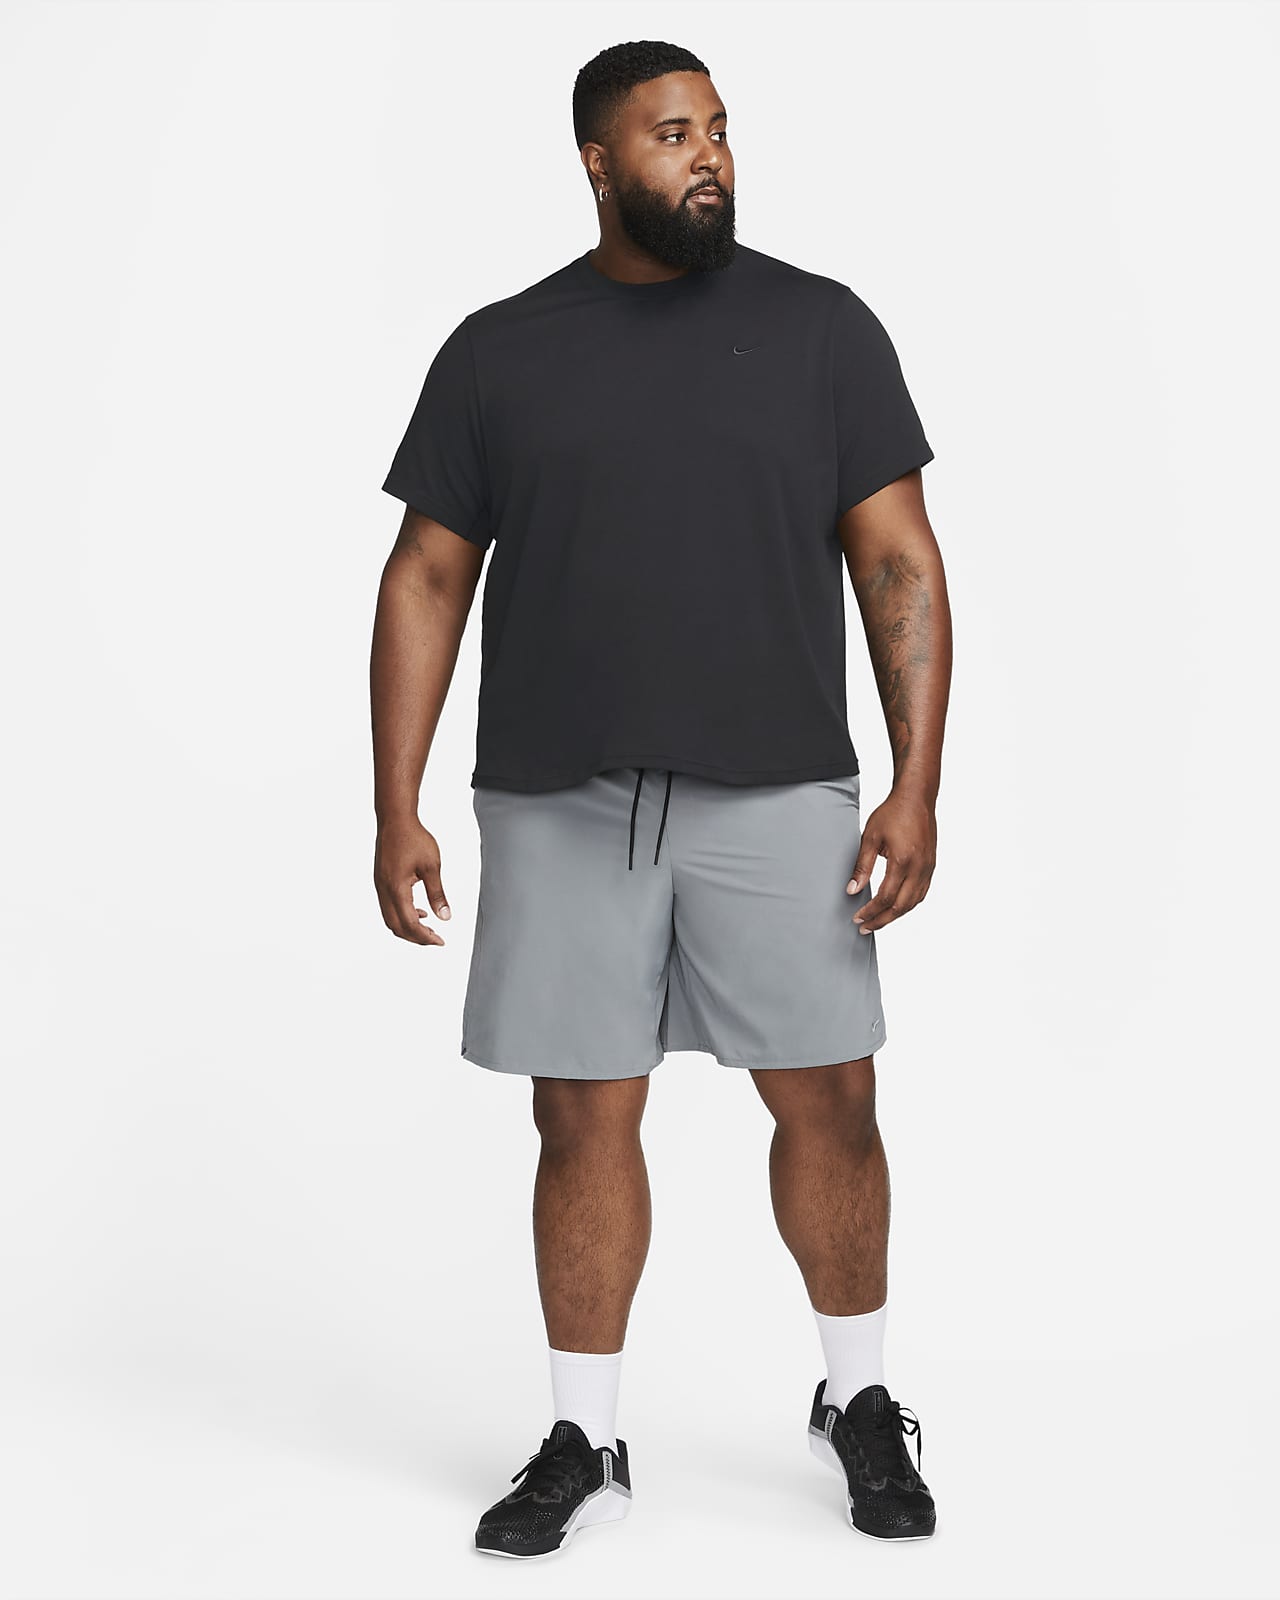 Nike Primary Men's Dri-FIT Versatile Tank Top. Nike LU